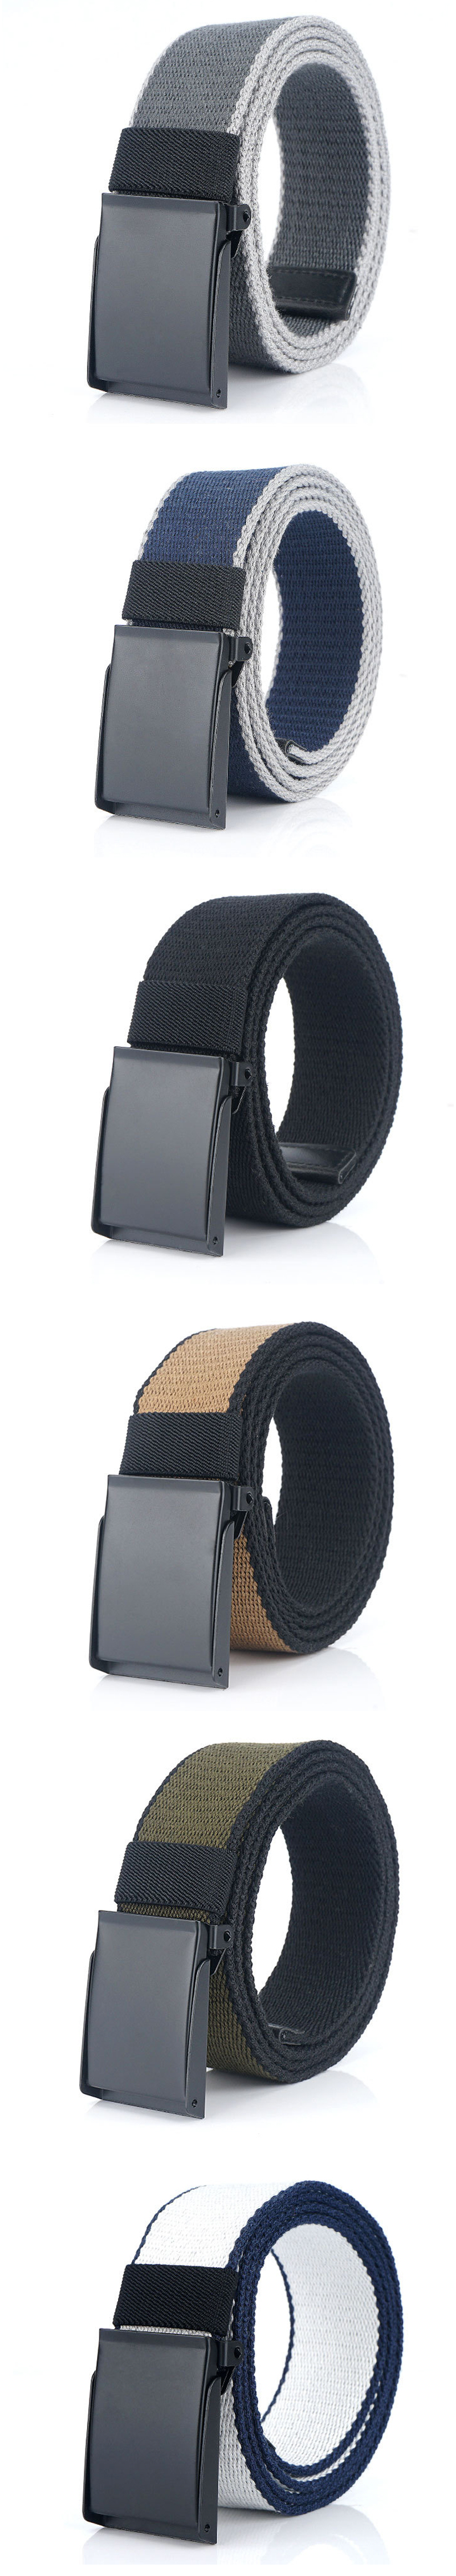 AWMN-PH120-Alloy-Buckle-Military-Tactical-Belt-Casual-Belt-Canvas-Waist-Belts-1541560-2